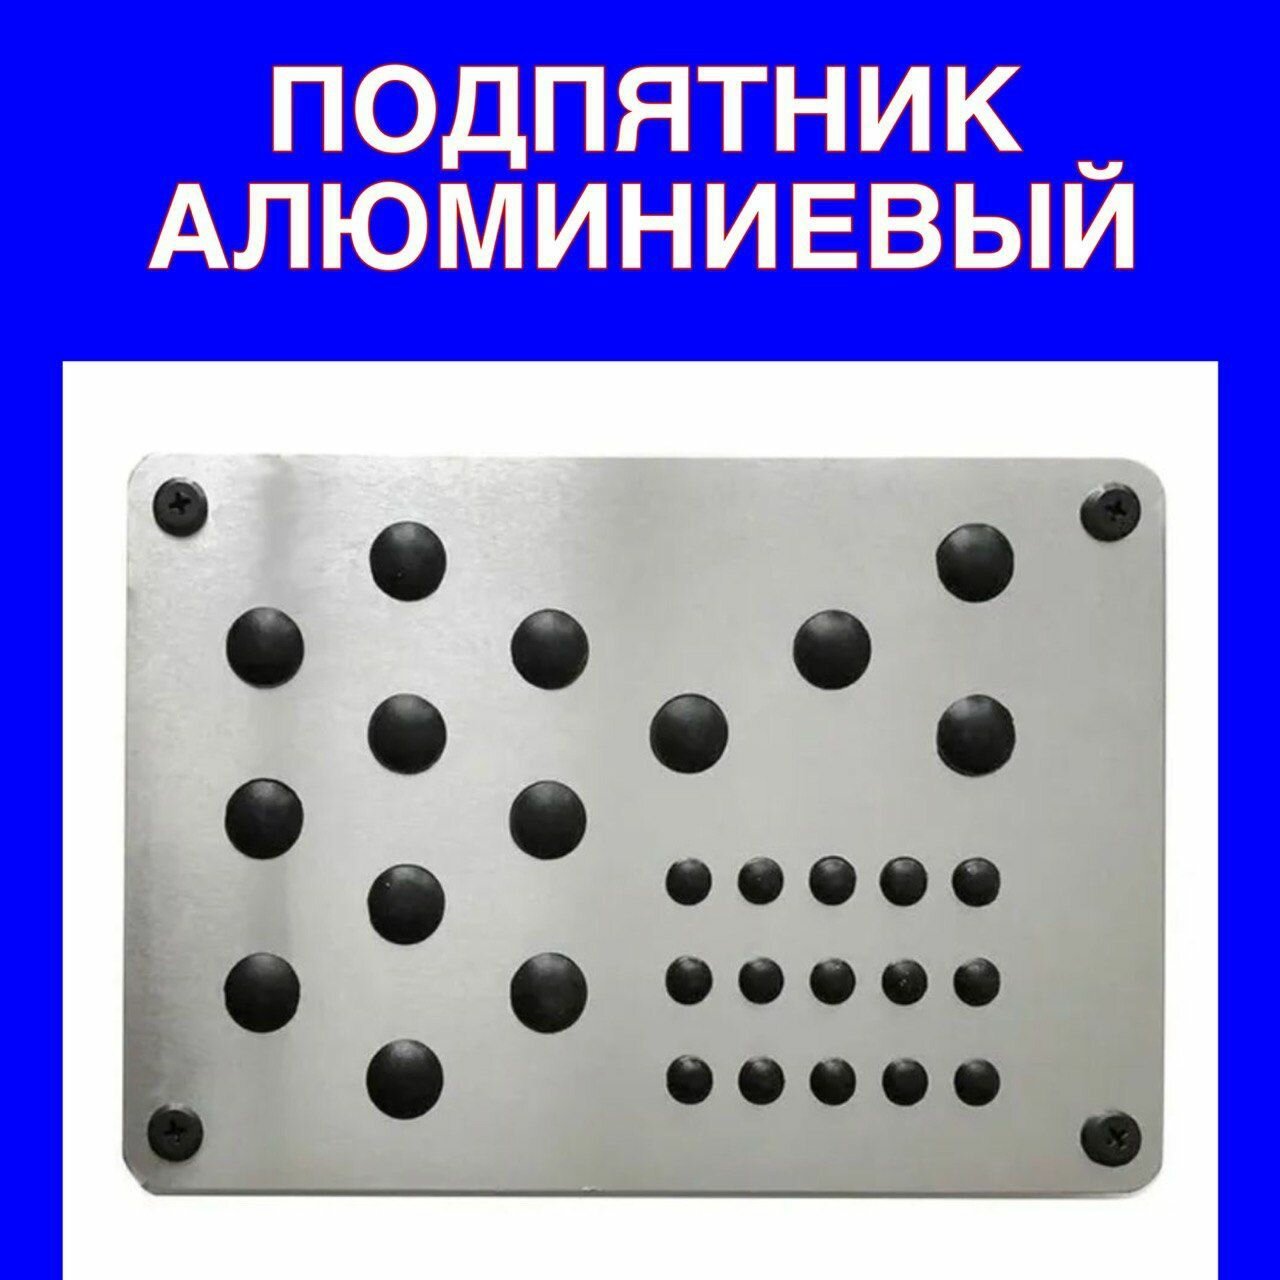 Подпятник алюминиевый для ЭВА ковриков Защита коврика от Каблуков подошвы